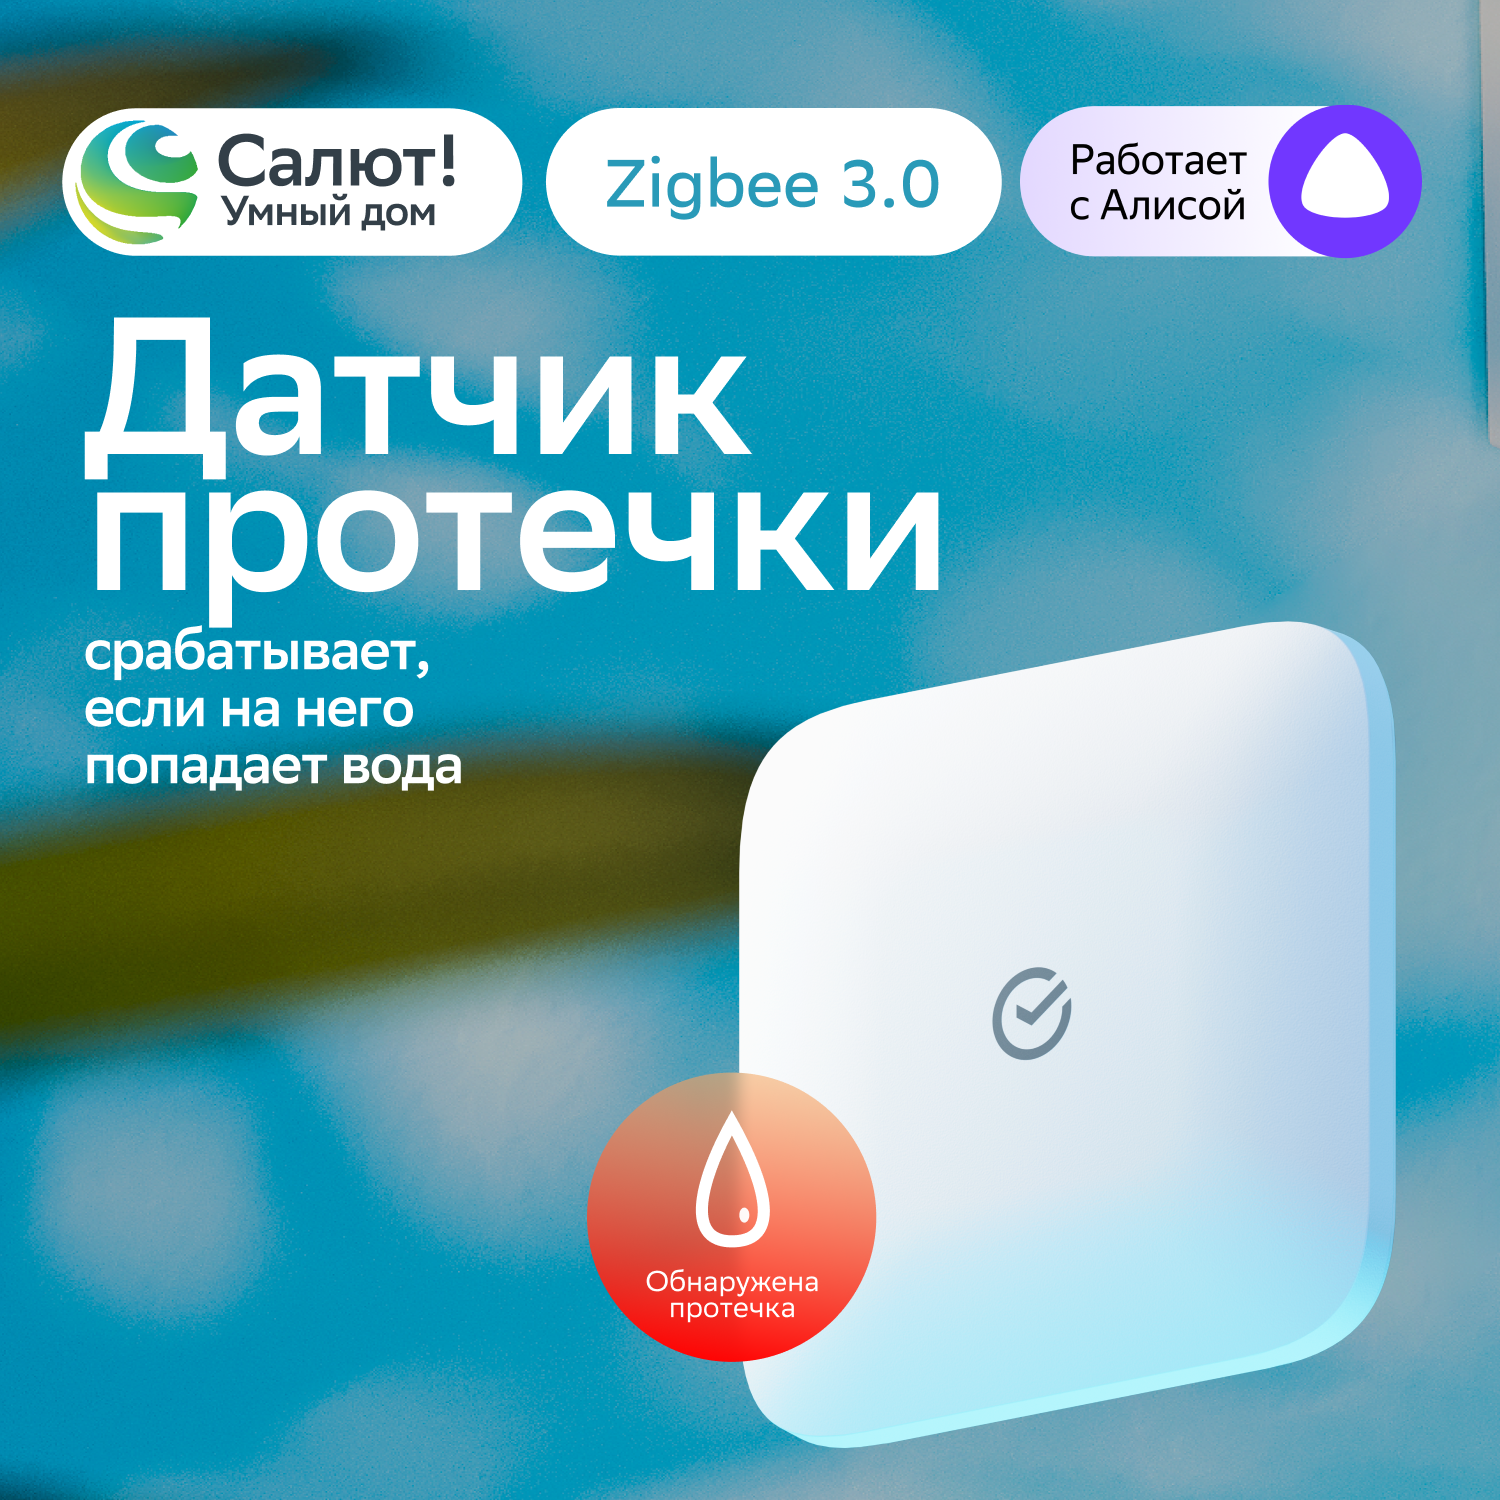 Умный датчик протечки воды Sber SBDV-00154, Zigbee 3.0, Совместим с Салют и Яндекс Алисой, Белый